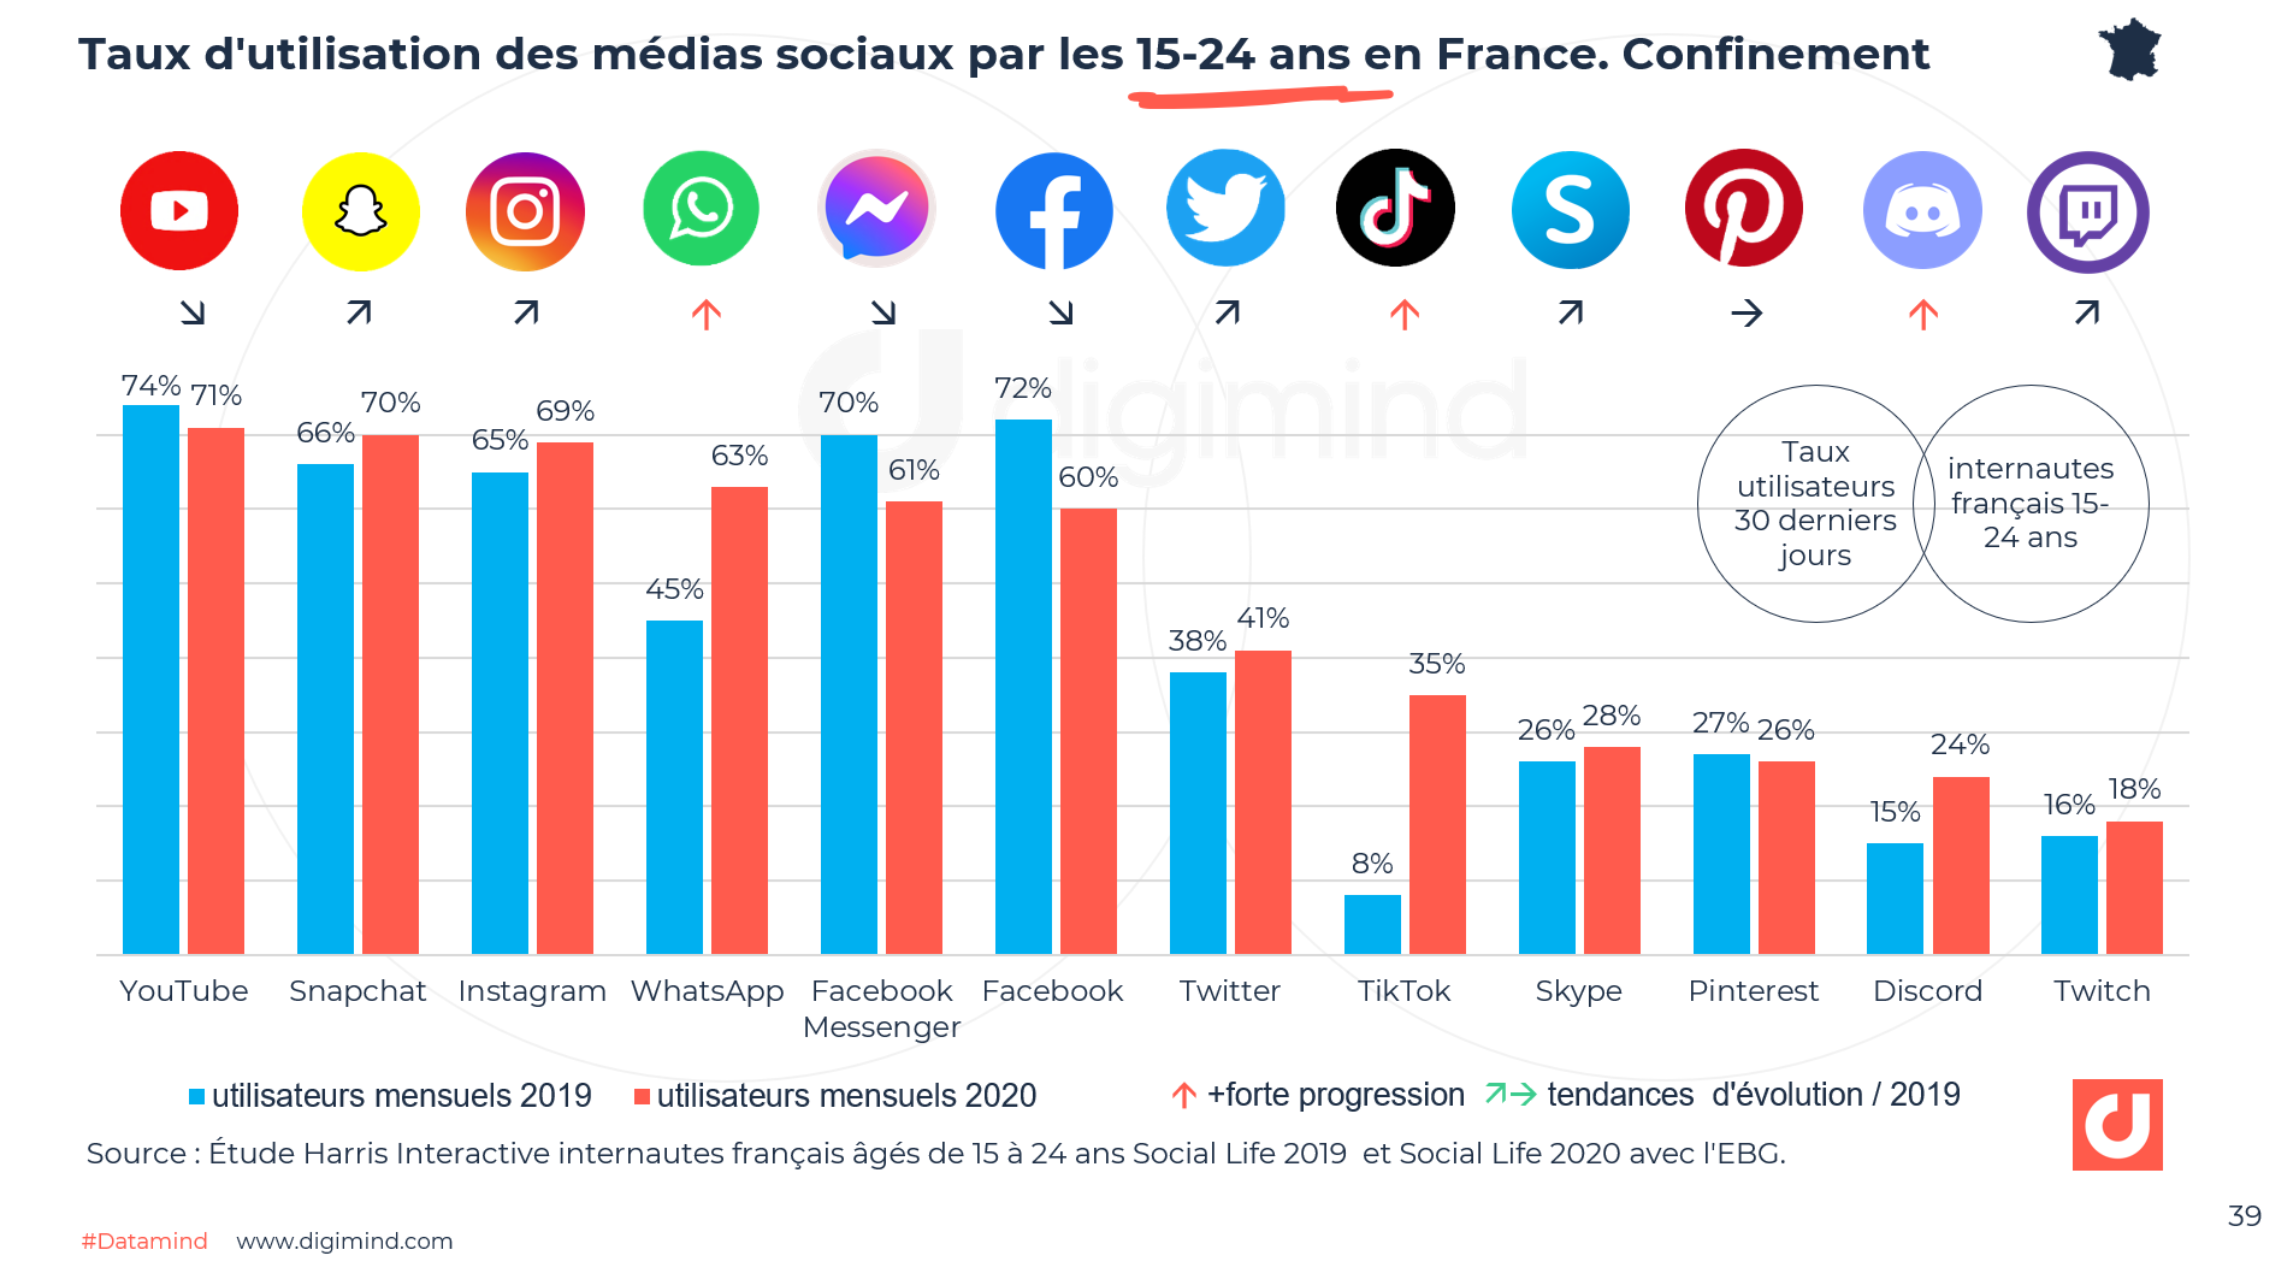 Taux d'utilisation des médias sociaux par les 15-24 ans en France. Confinement (